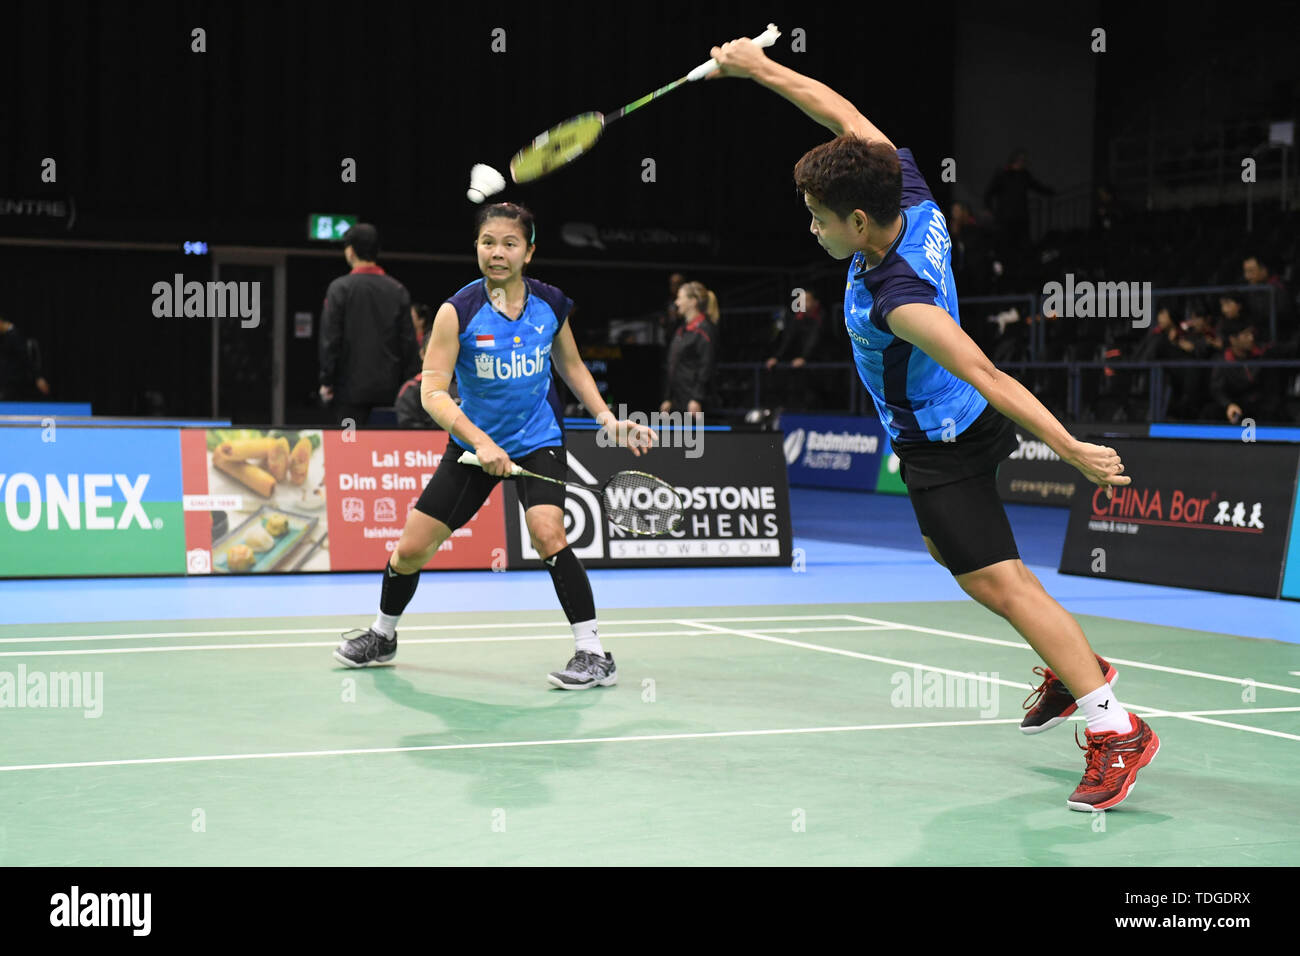 Apriyani Rahayu und Graysia Polii (Indonesien) in Aktion während der 2019 Doppel Viertelfinale australische Badminton Open gesehen Match gegen Mayu Matsumoto und Wakana Nagahara (Japan). Rahayu und Polii gewann das Match 21-19, 21-18. Stockfoto